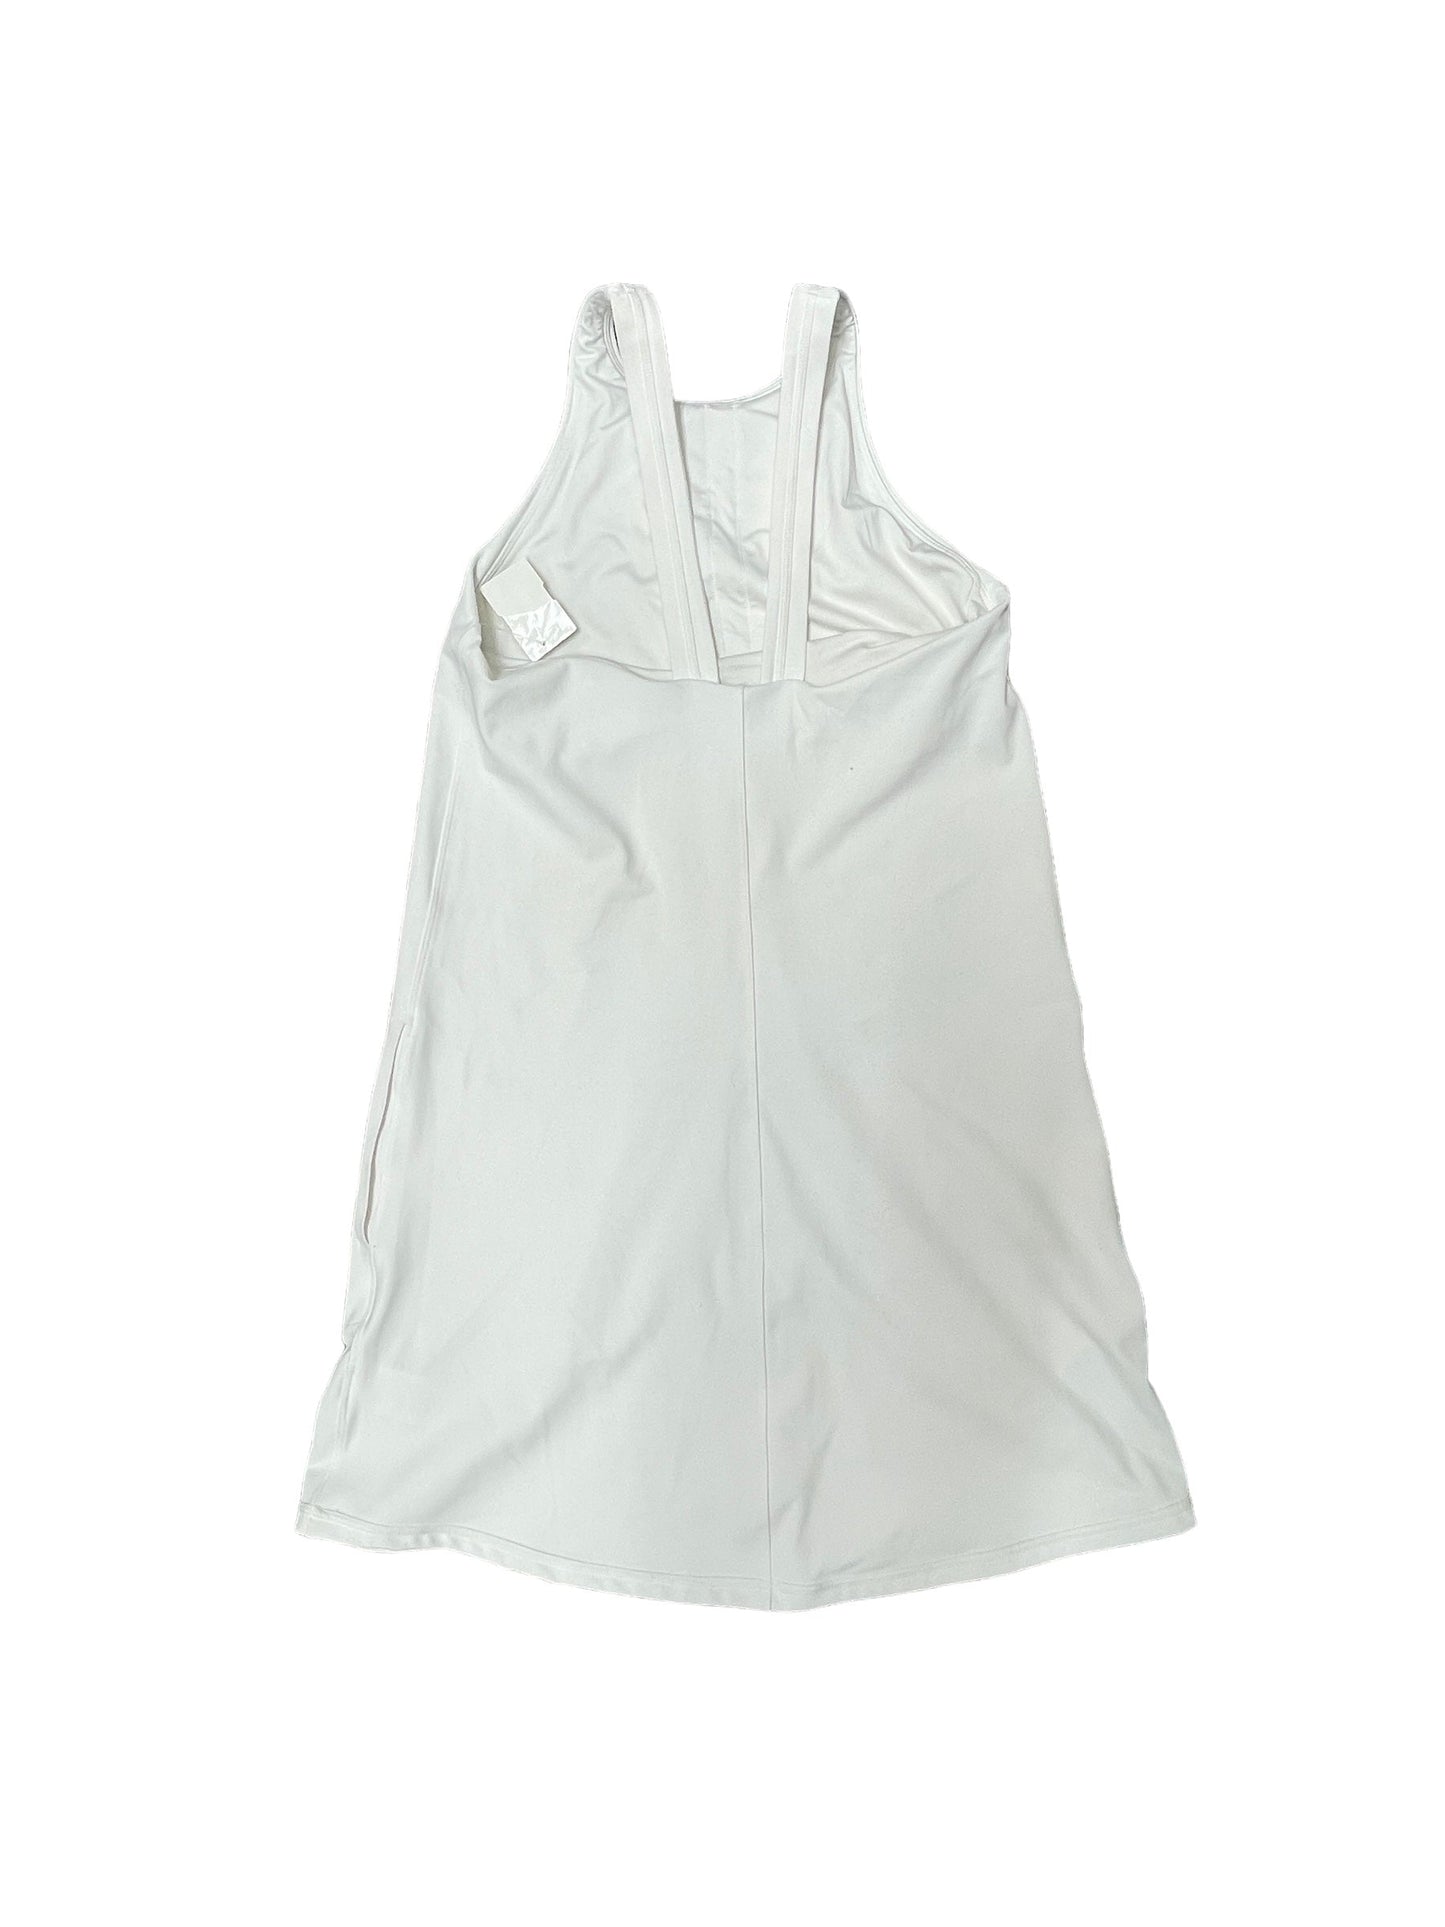 White Athletic Dress Cma, Size S